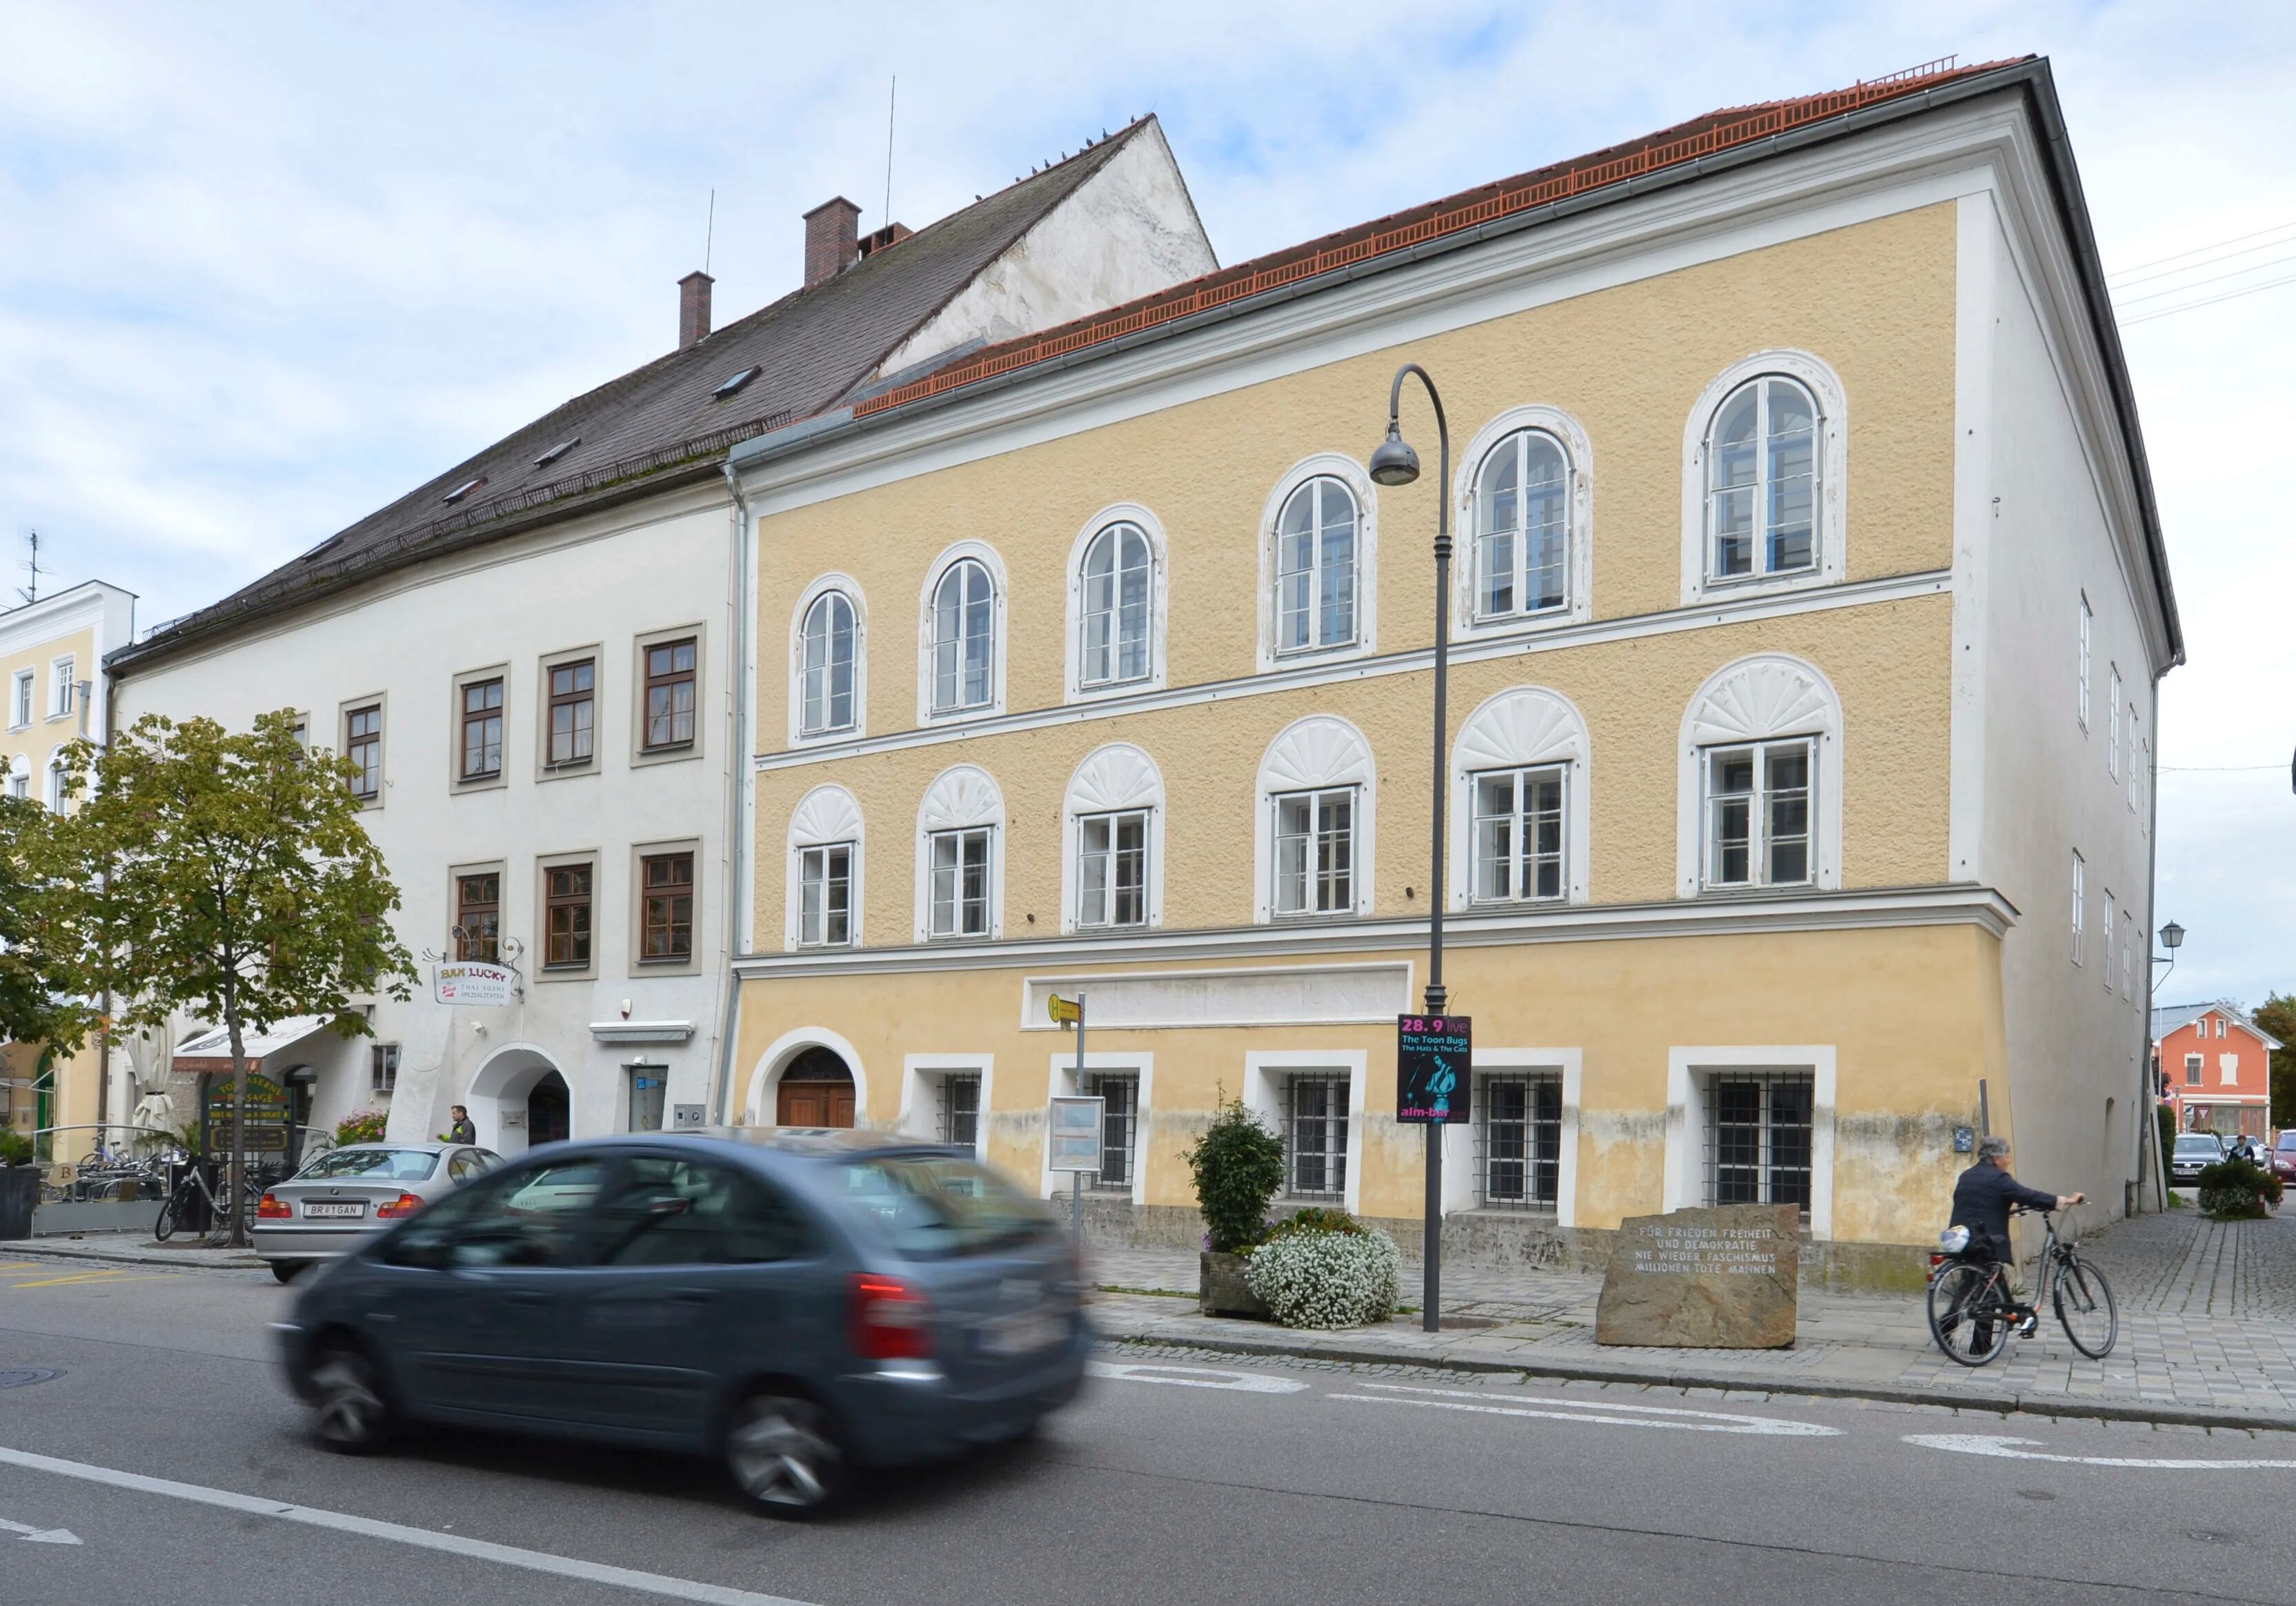 Comenzaron los trabajos en Austria para convertir la casa donde nació Hitler en una estación de policía